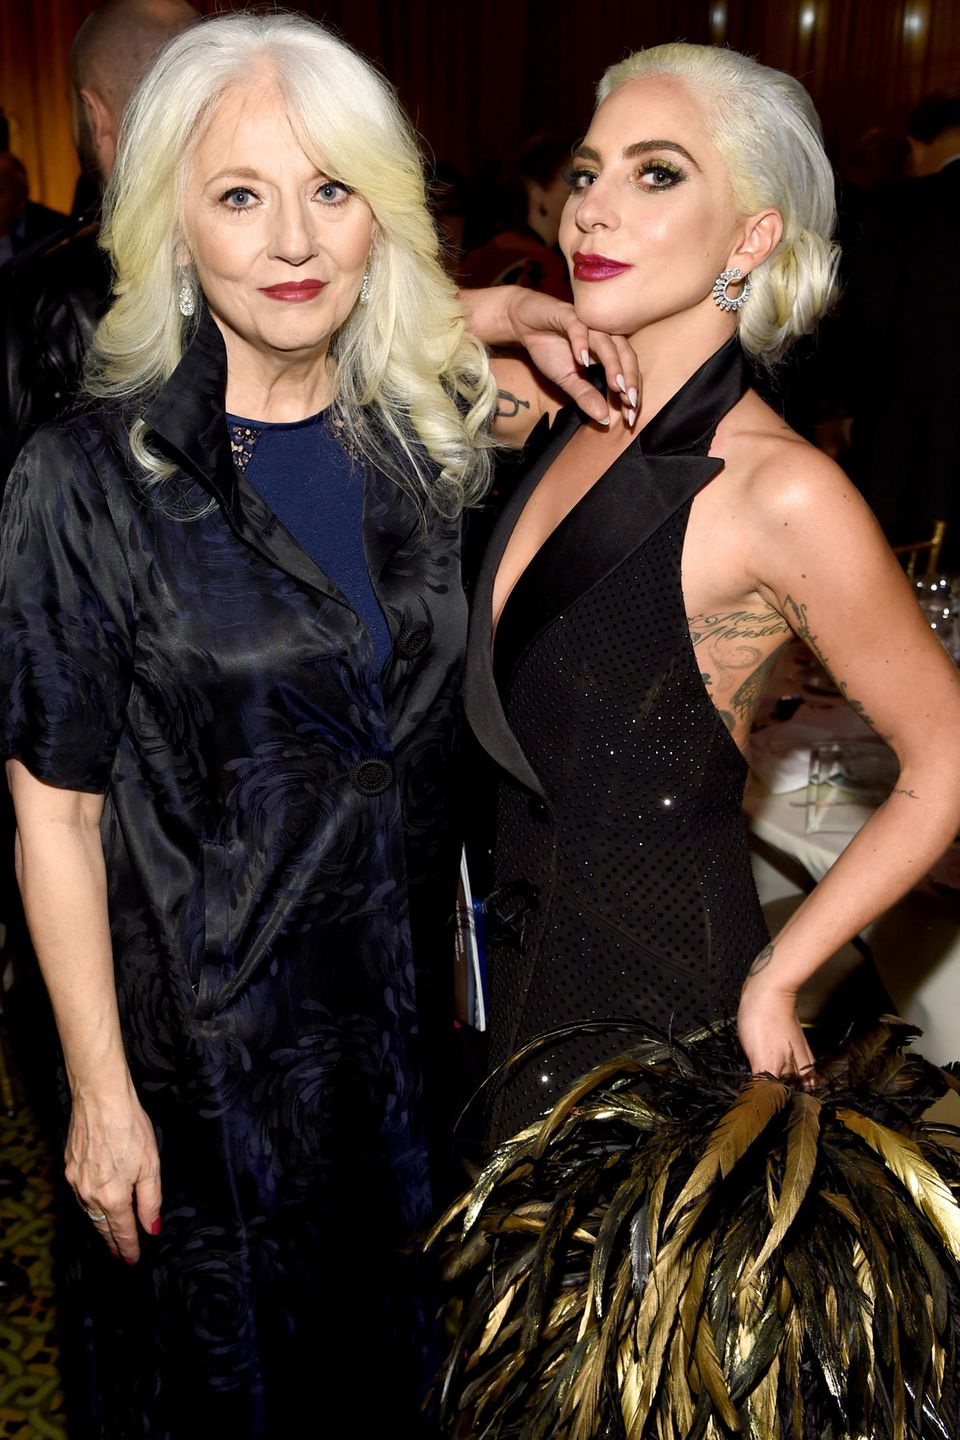 Lady Gaga erkrankte als Teenager an einer Depression. Ihre Mutter Cynthia Germanotta gibt zu, dass sie nicht genug über die Erkrankung informiert gewesen sei und die Anzeichen übersah. 